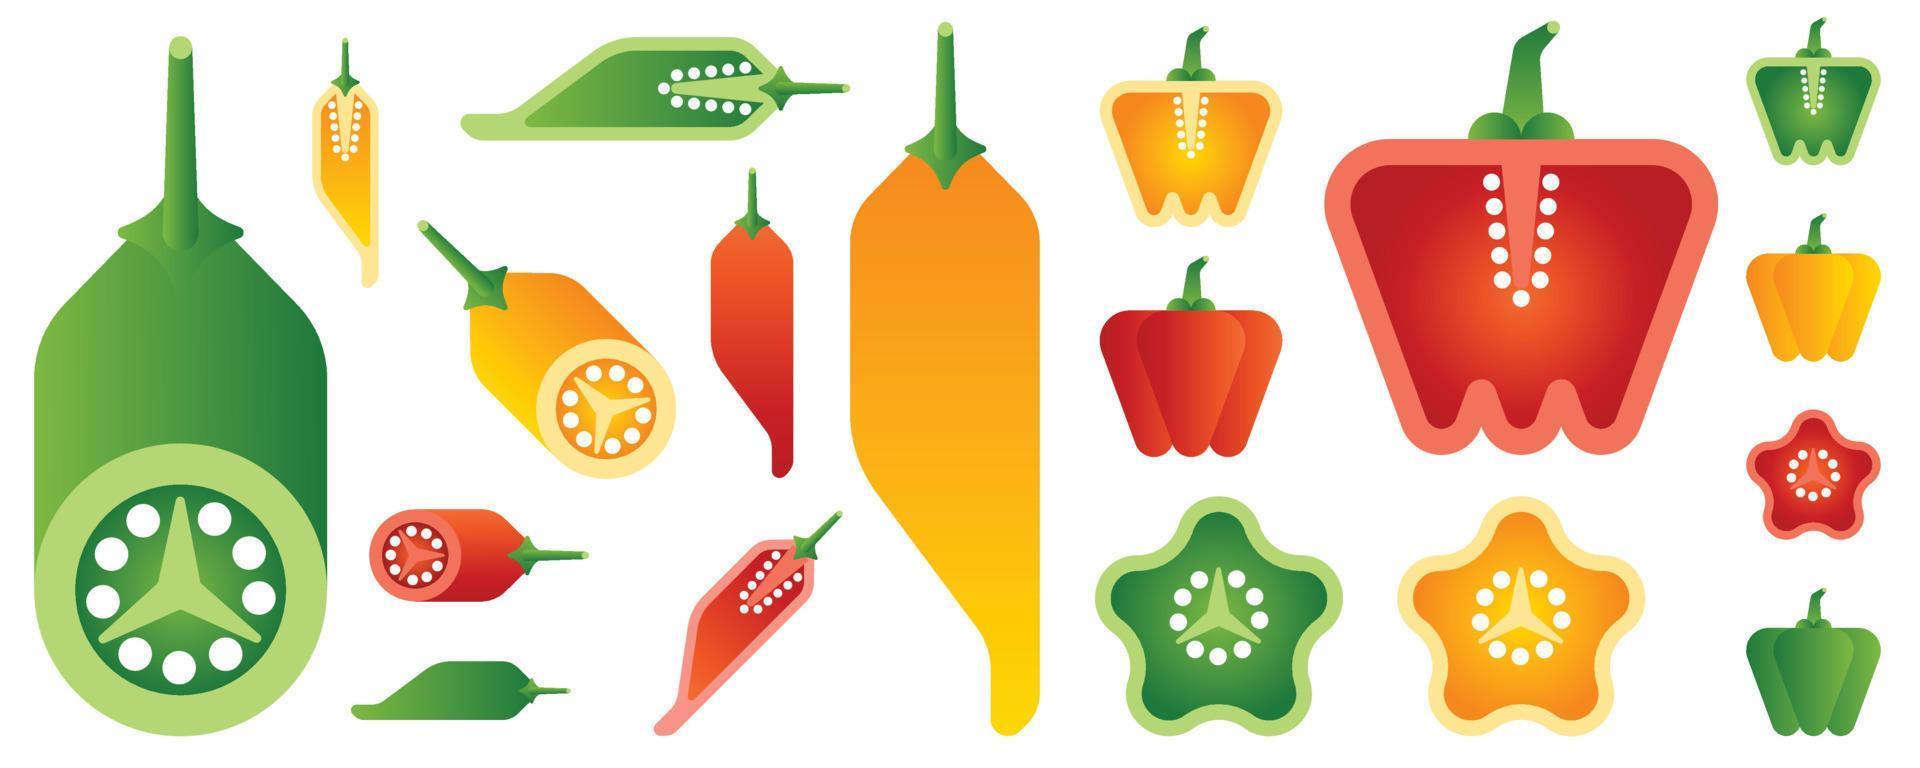 isolerade grönsaker och frukter på vit bakgrund. vektor illustration.